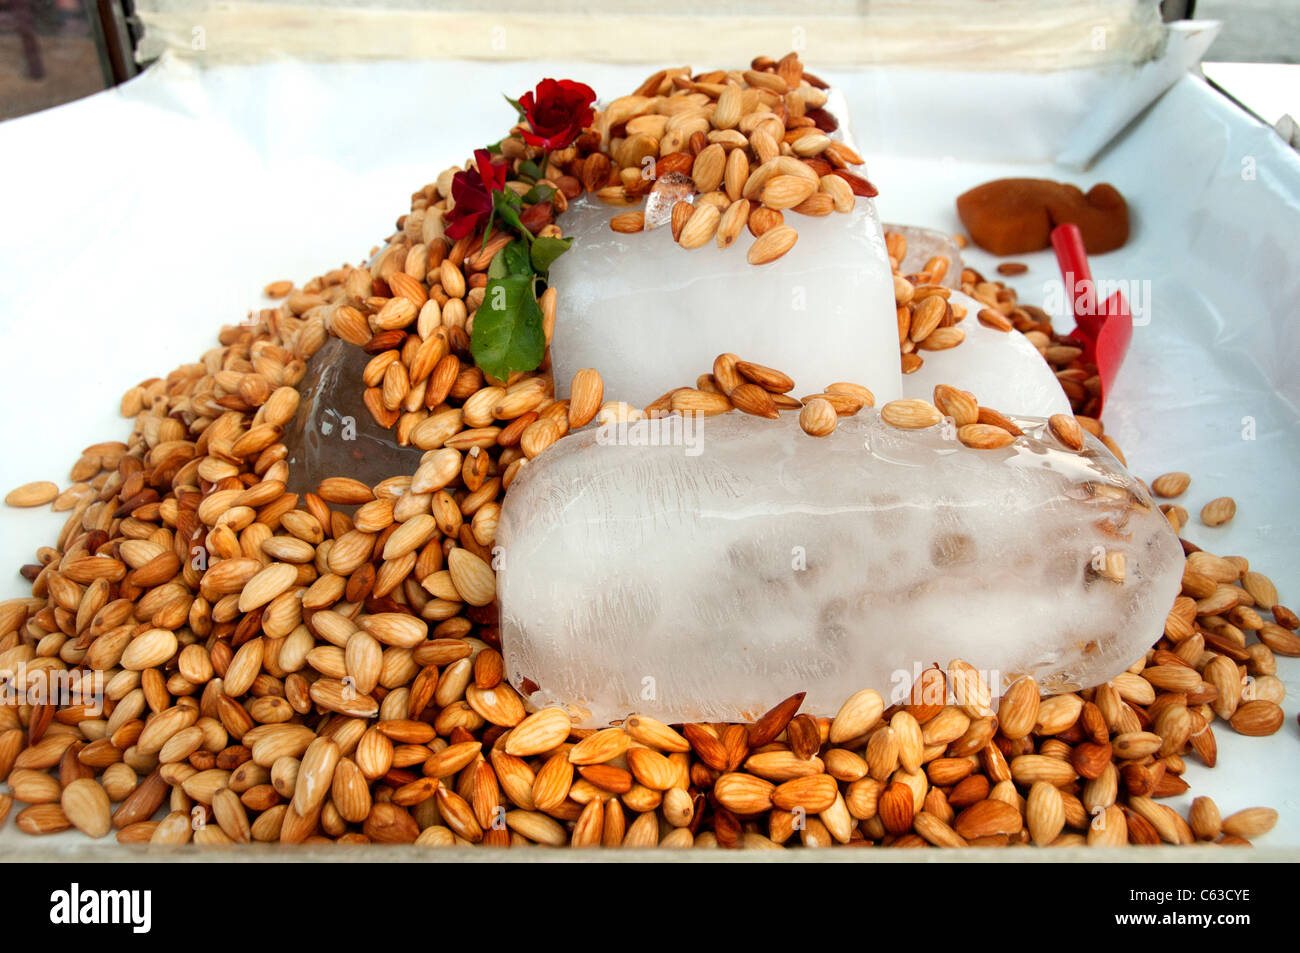 Almonds Almond Nuts Ice Restaurant Turkey Turkish Stock Photo